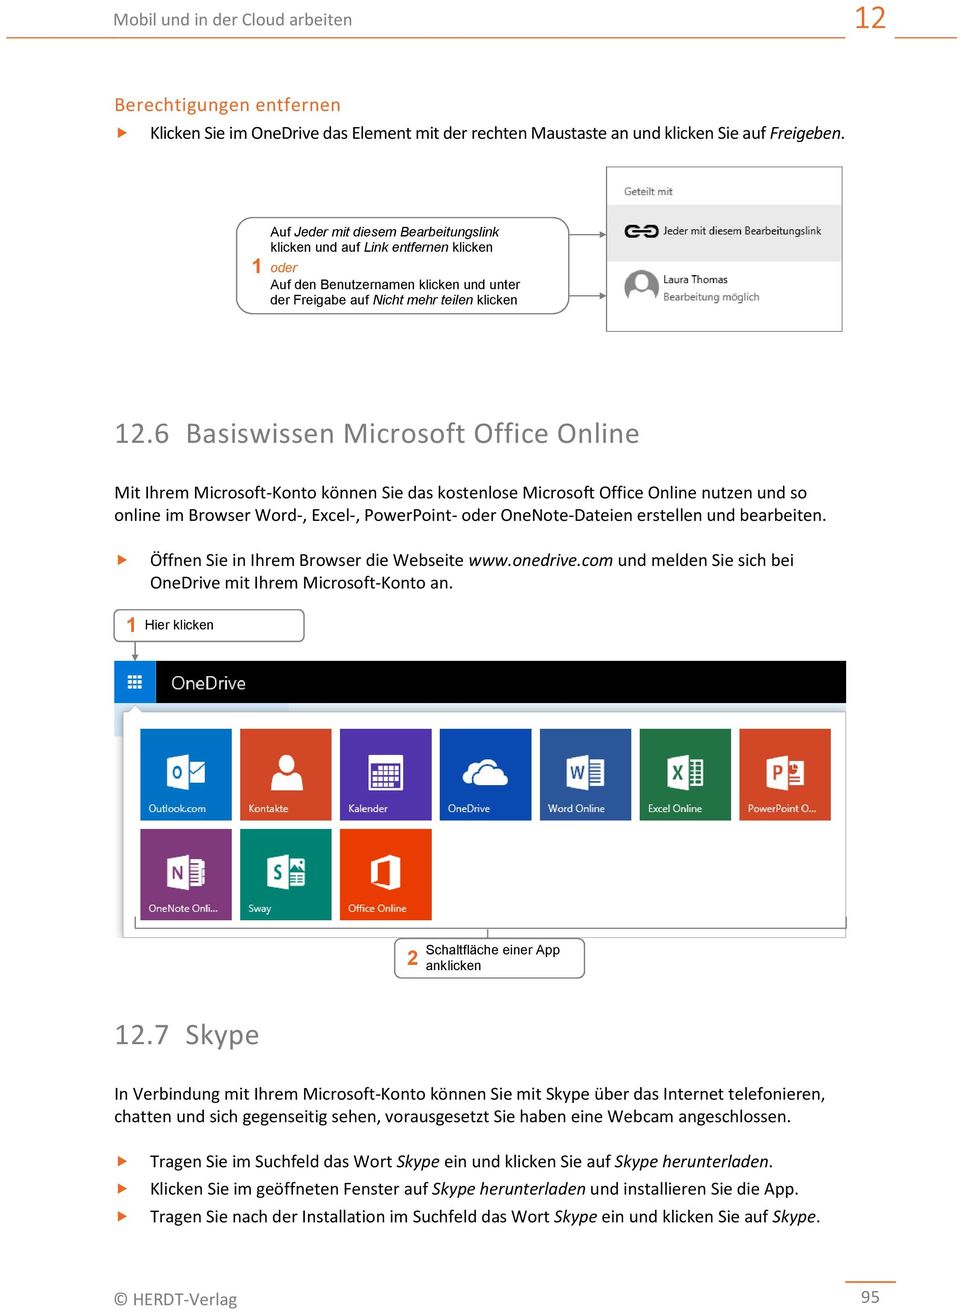 6 Basiswissen Microsoft Office Online Mit Ihrem Microsoft-Konto können Sie das kostenlose Microsoft Office Online nutzen und so online im Browser Word-, Excel-, PowerPoint- oder OneNote-Dateien